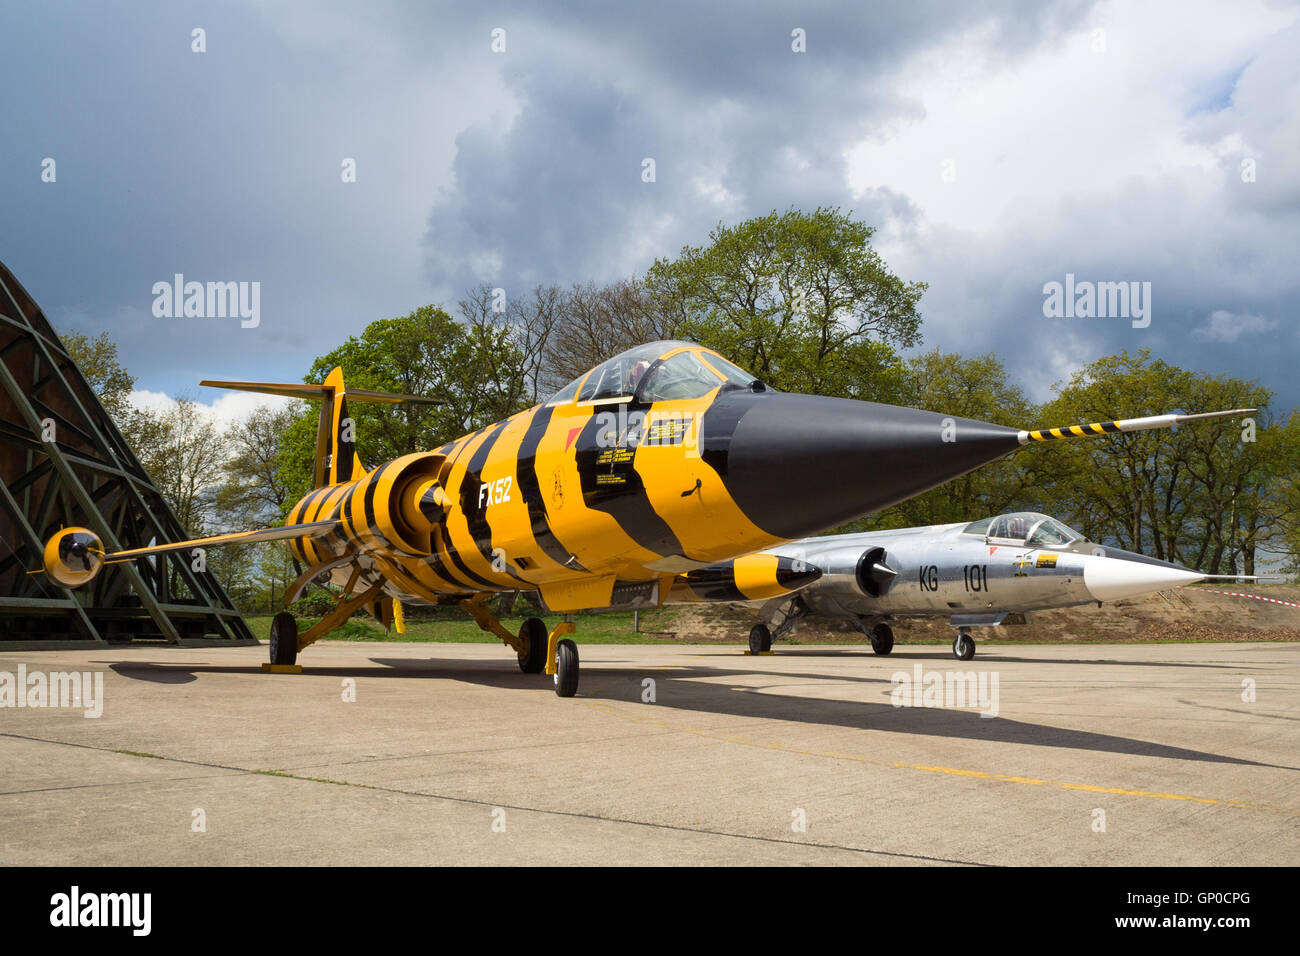 F 104 Banque de photographies et d'images à haute résolution - Alamy